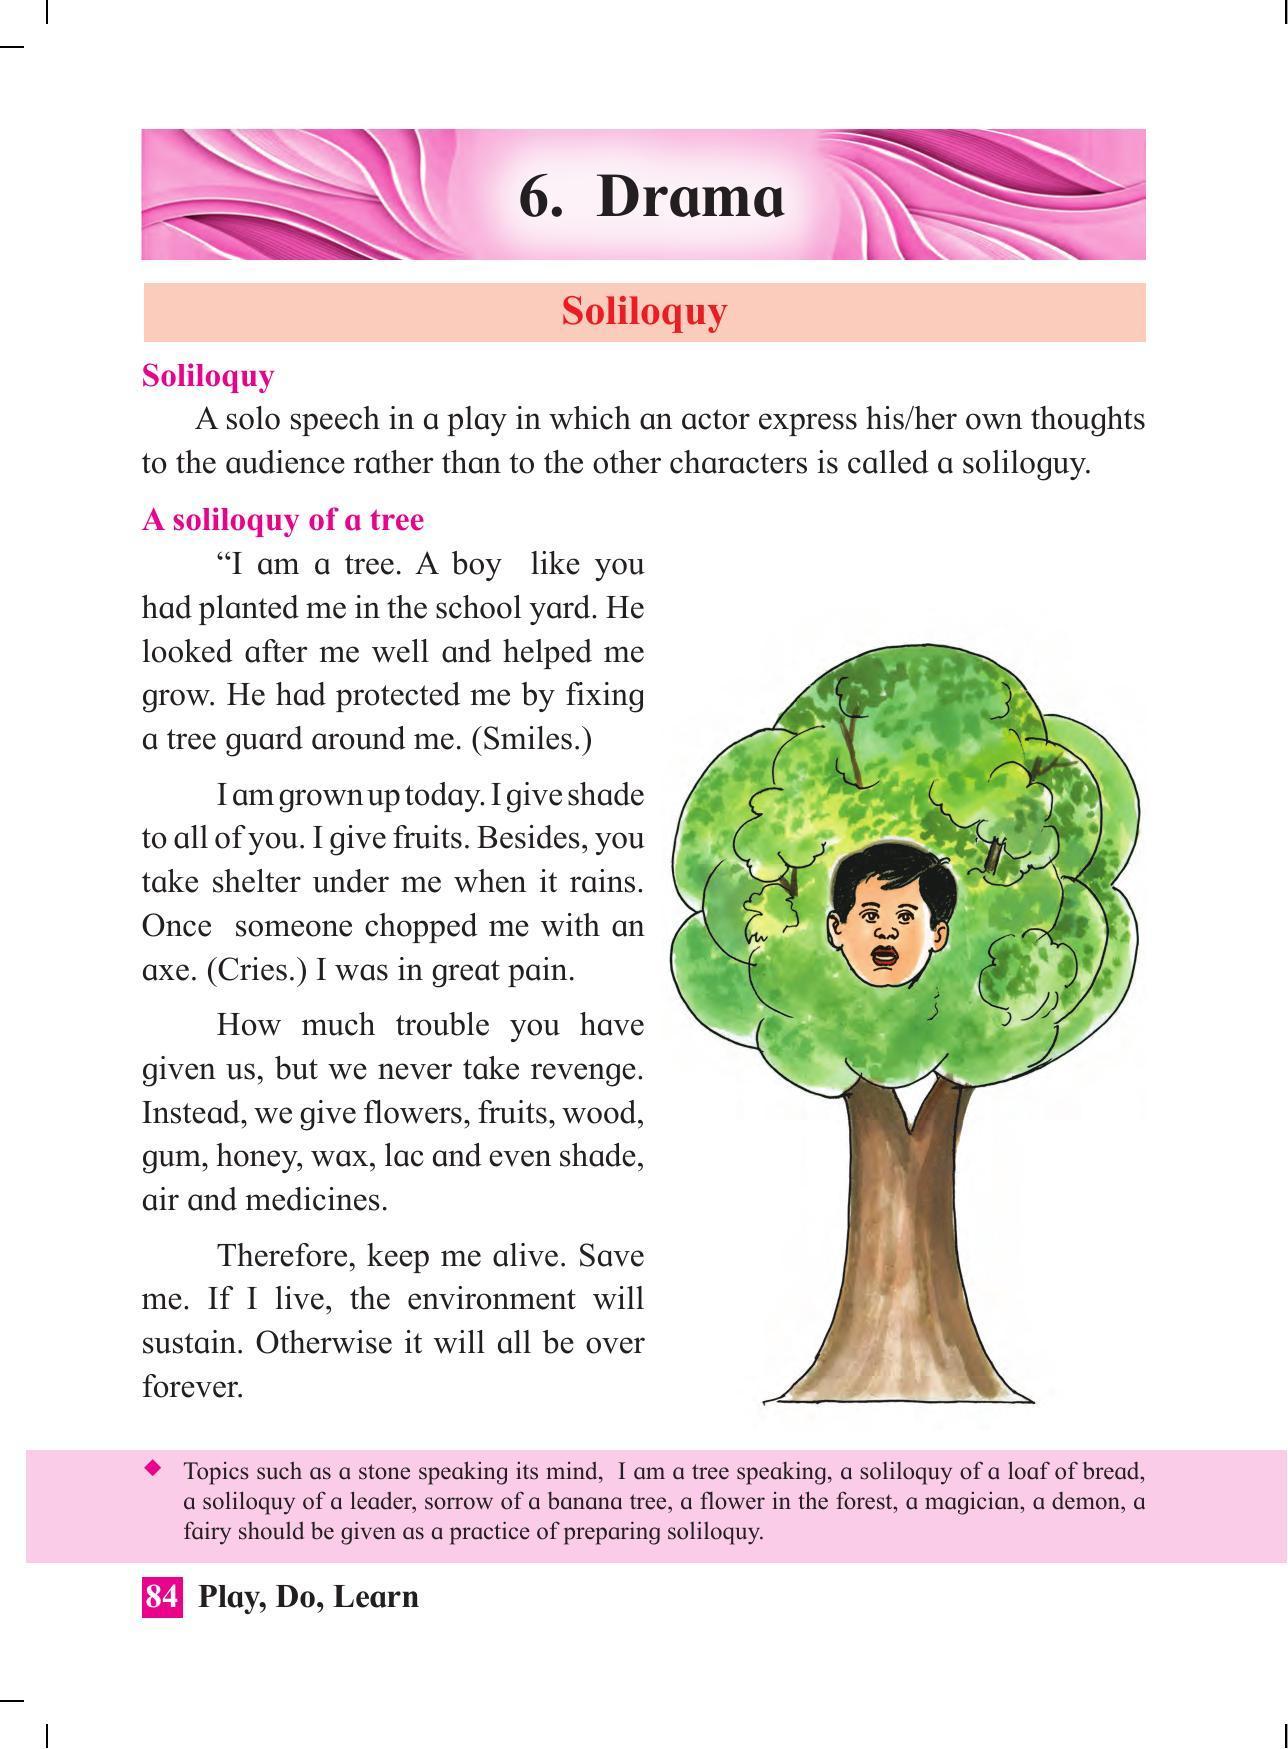 Maharashtra Board Class 4 Play Do Learn (English Medium) Textbook - Page 93